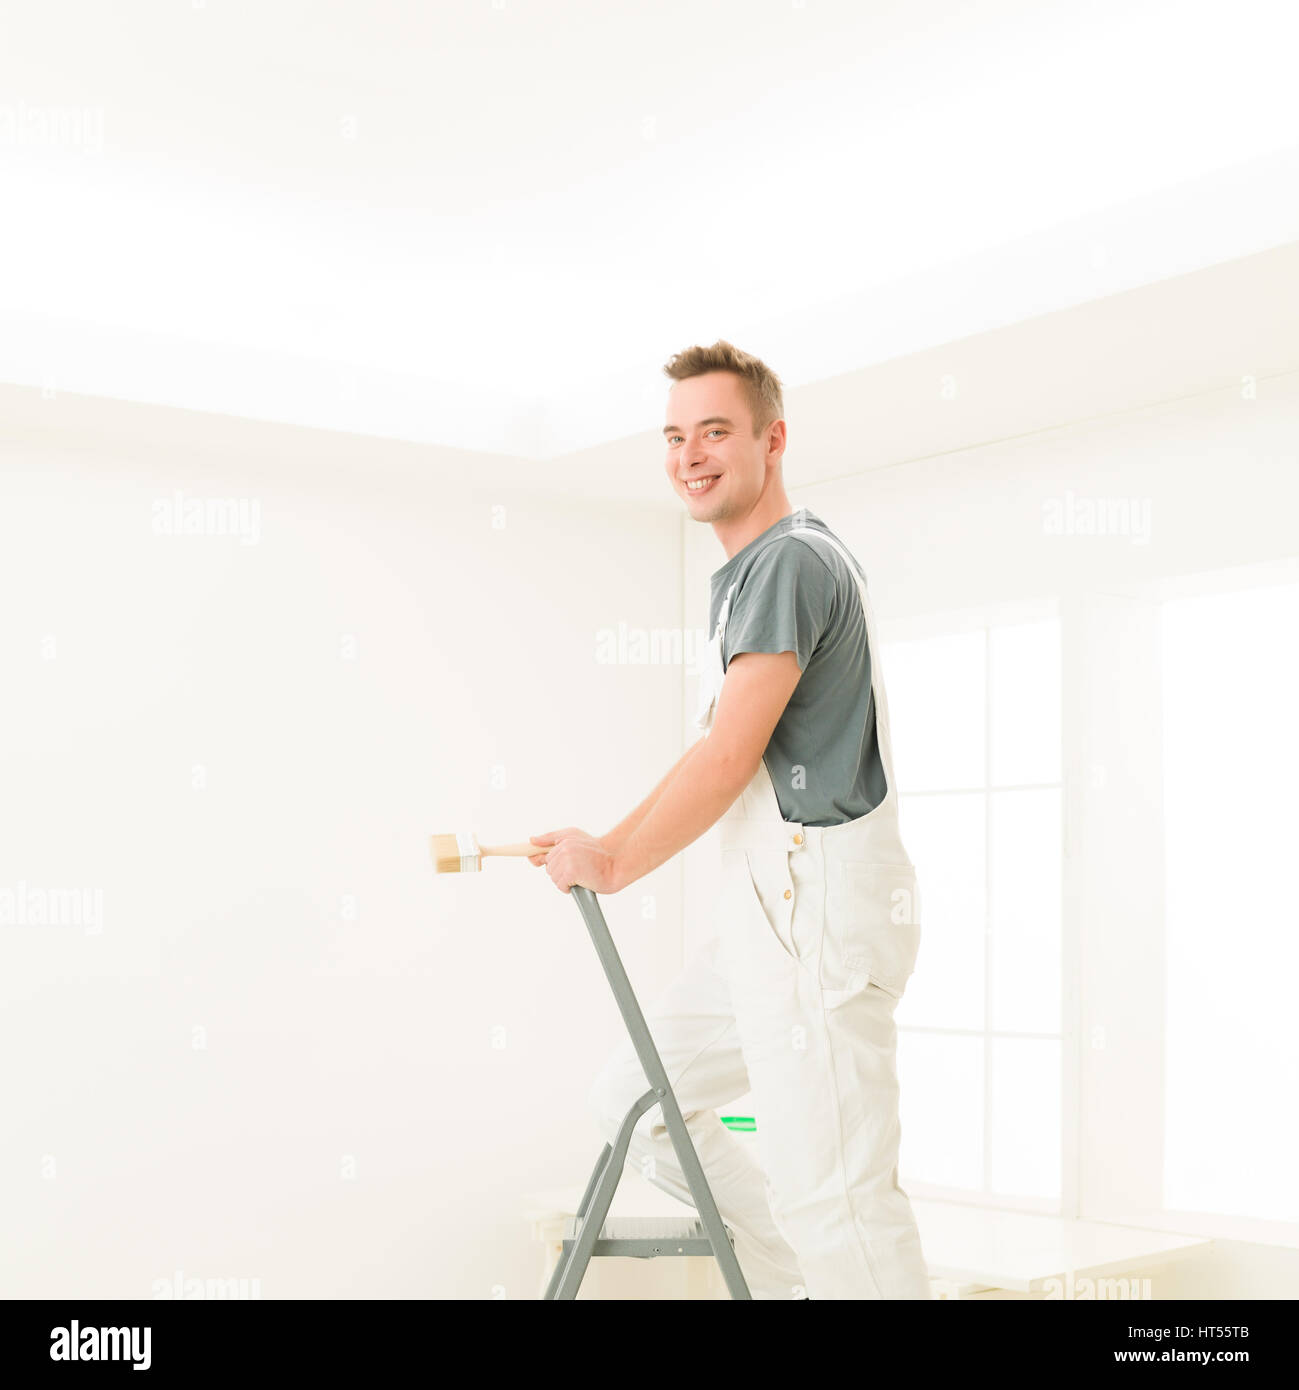 Quadratische Porträt junger Mann Lachen stehen auf einer Leiter mit einem Pinsel, strahlend weiß zu Hause. Reparatur, Bau, Renovierung und Menschen-Konzept Stockfoto